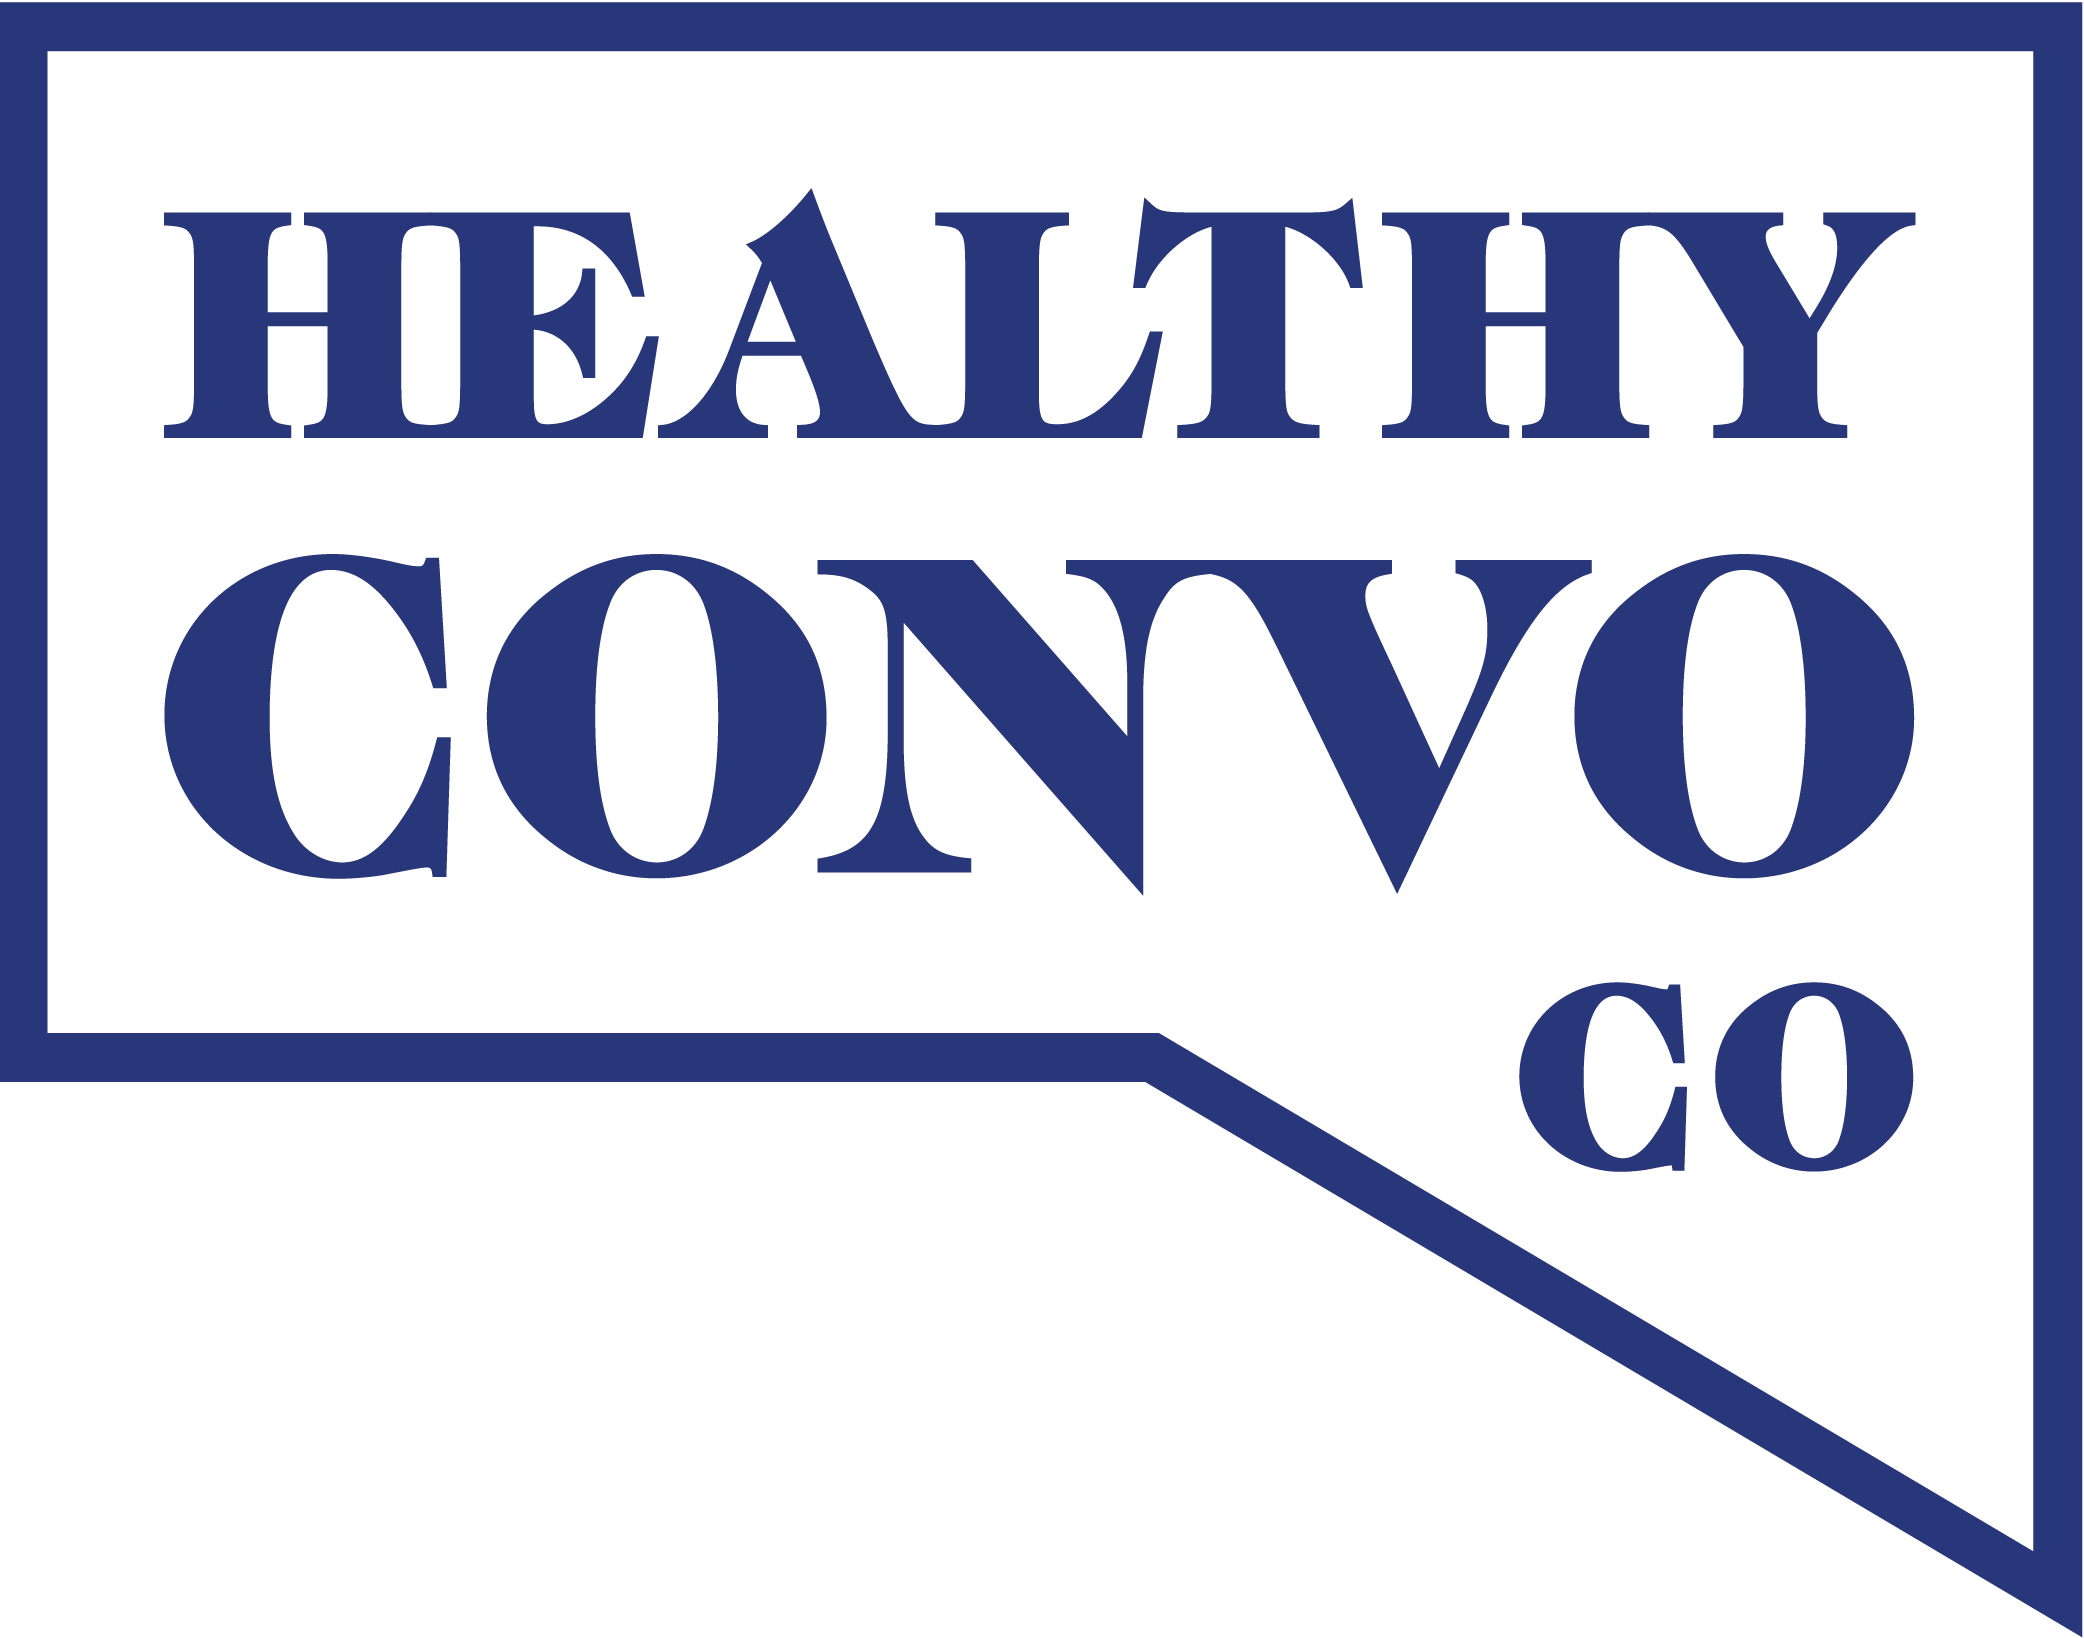 Healthy Convo Co